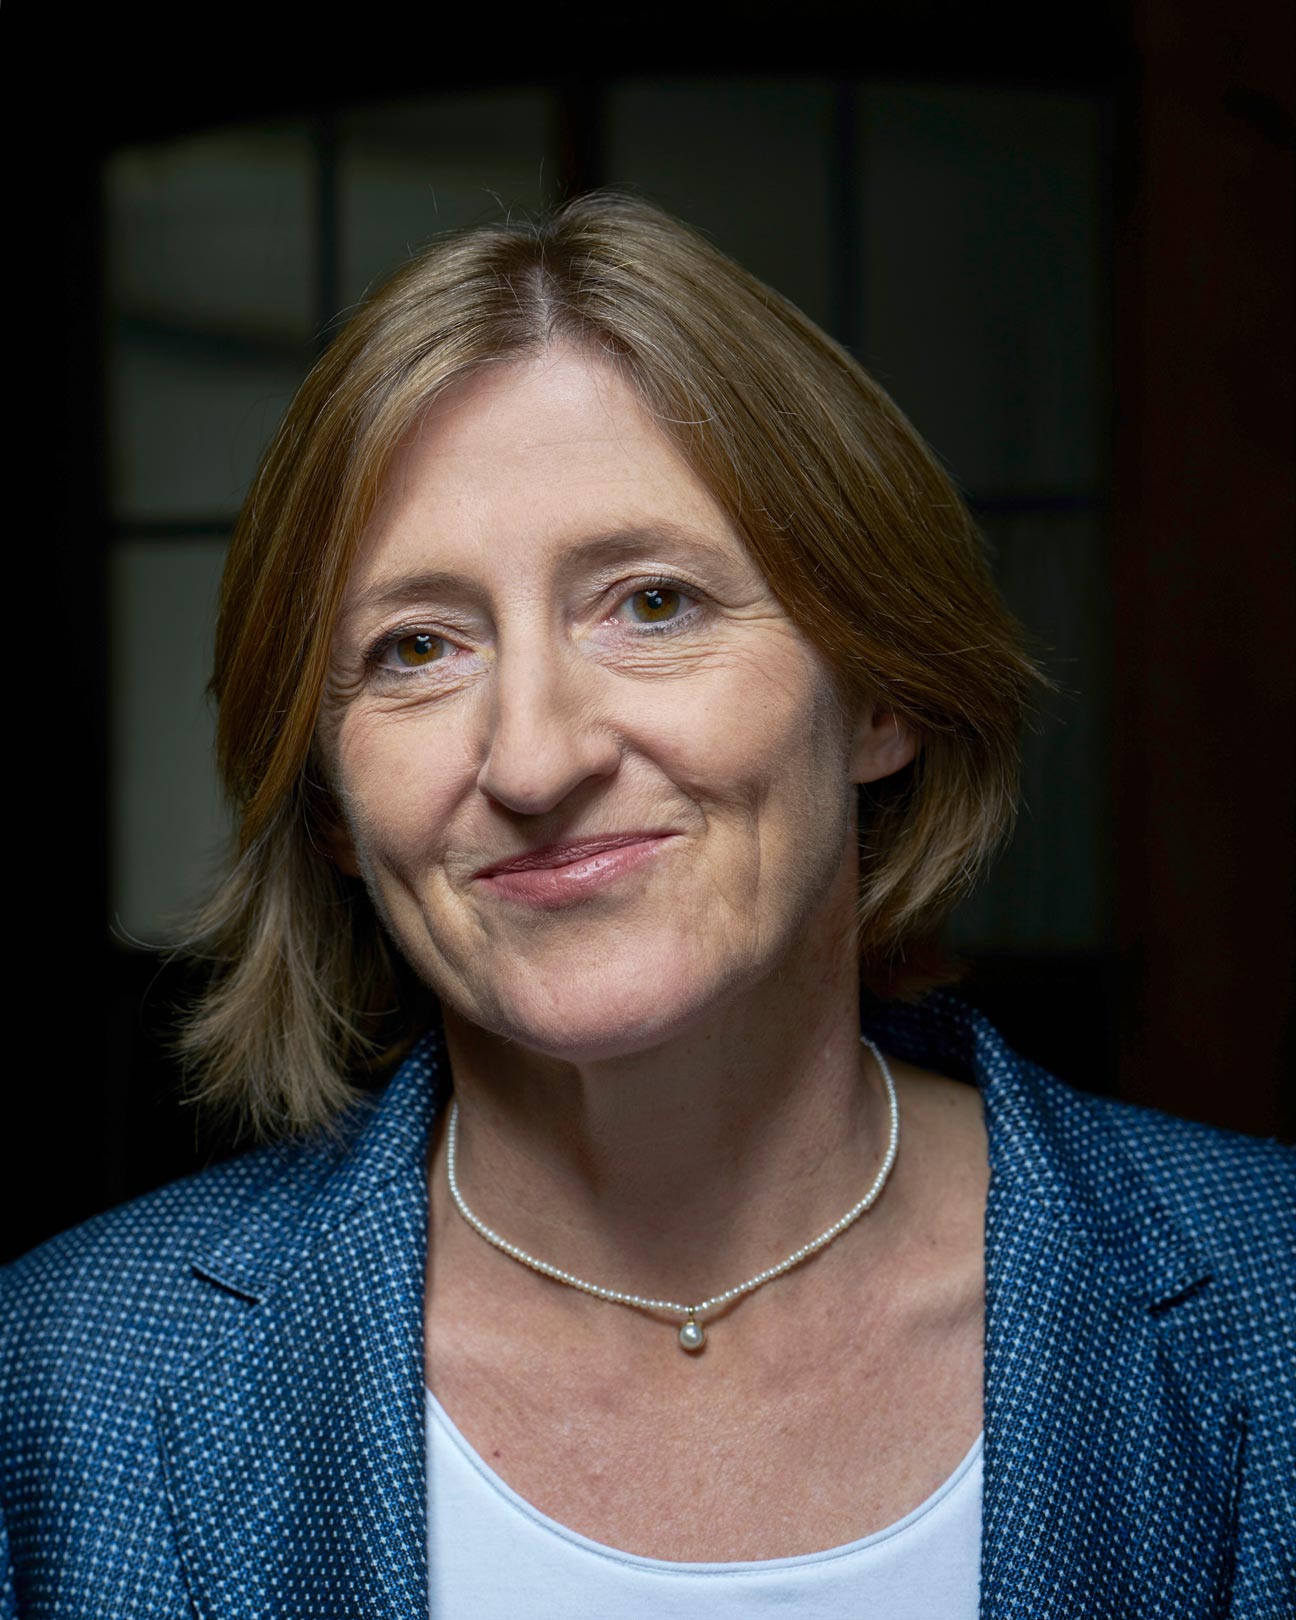 Hon. Prof. Dr. Monika Bütler ist Expertin für Economic Policy und Mitglied der Swiss National Covid-19 Science Task Force